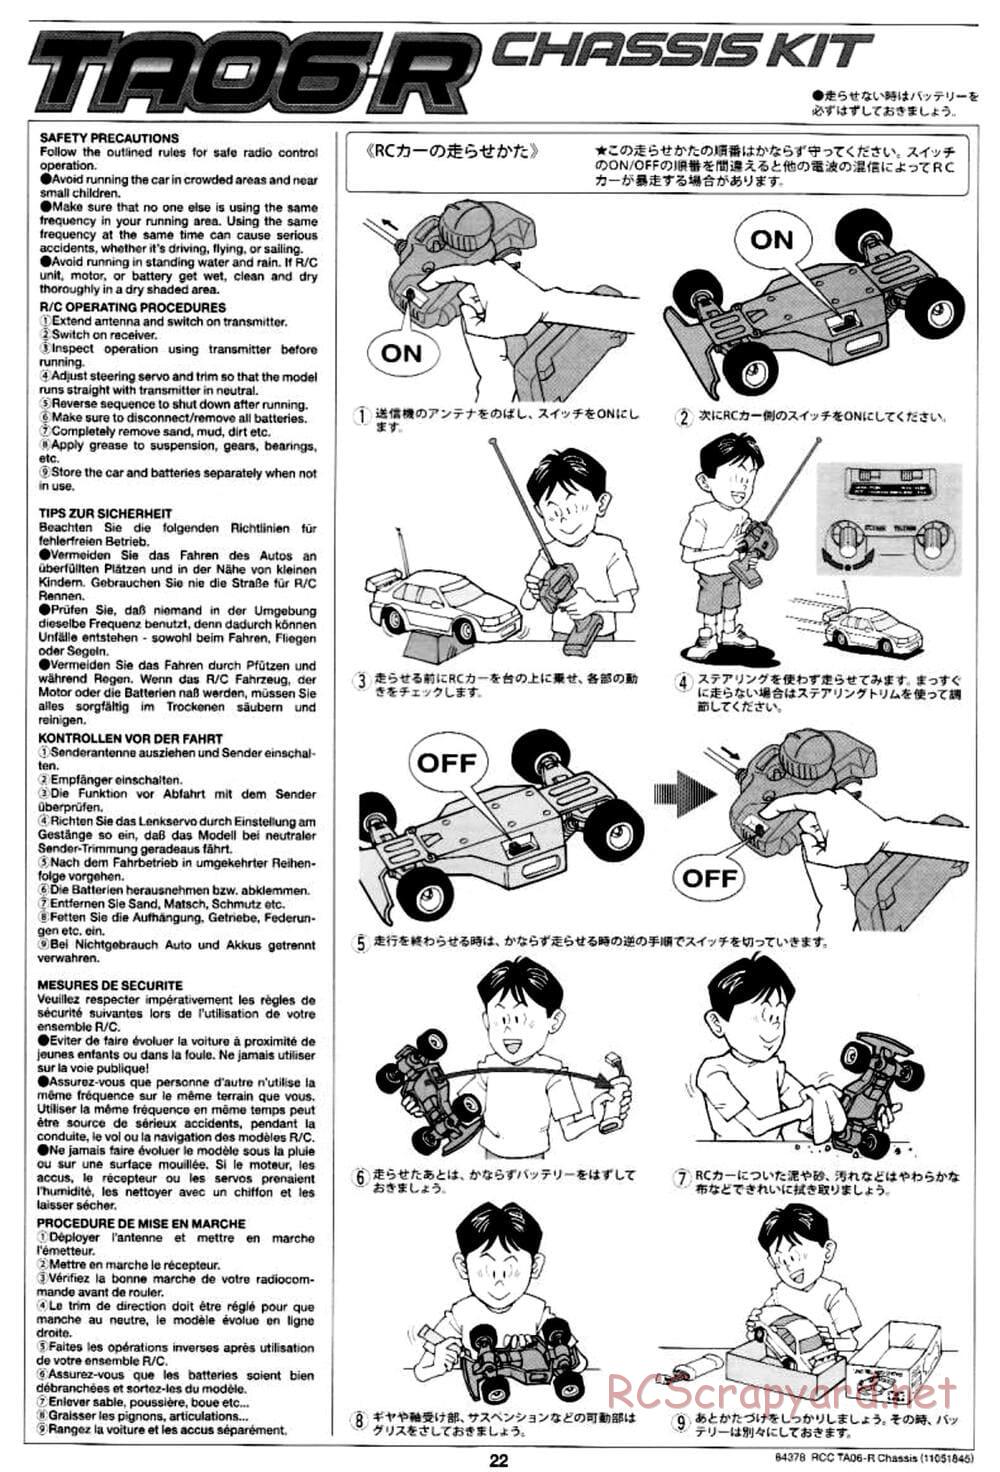 Tamiya - TA06-R Chassis - Manual - Page 22